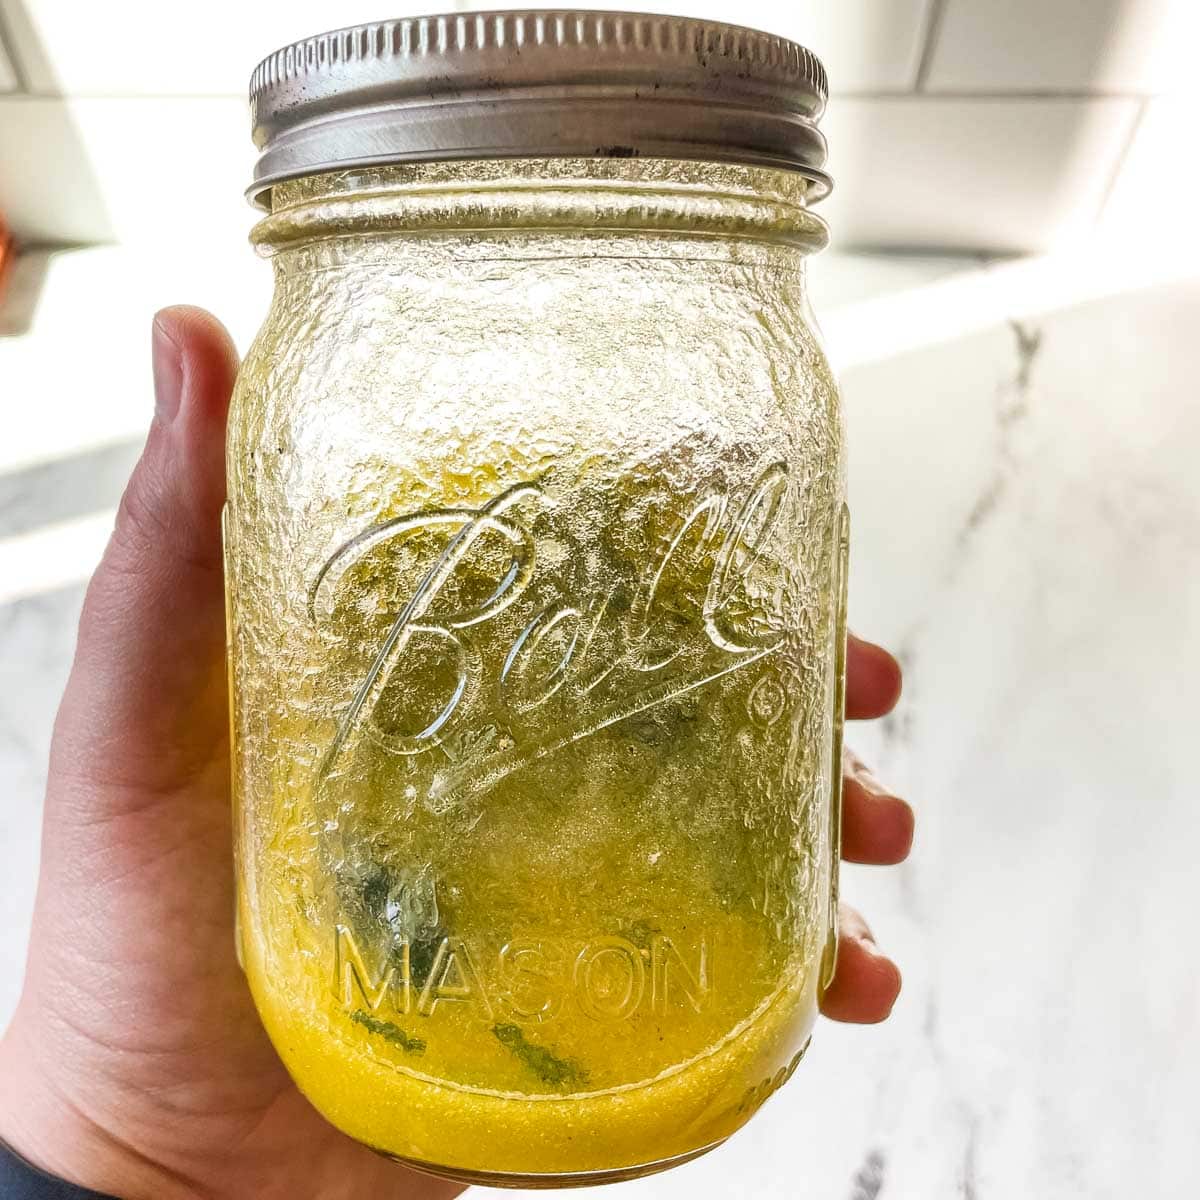 An emulsified lemon vinaigrette is shown in a glass jar.